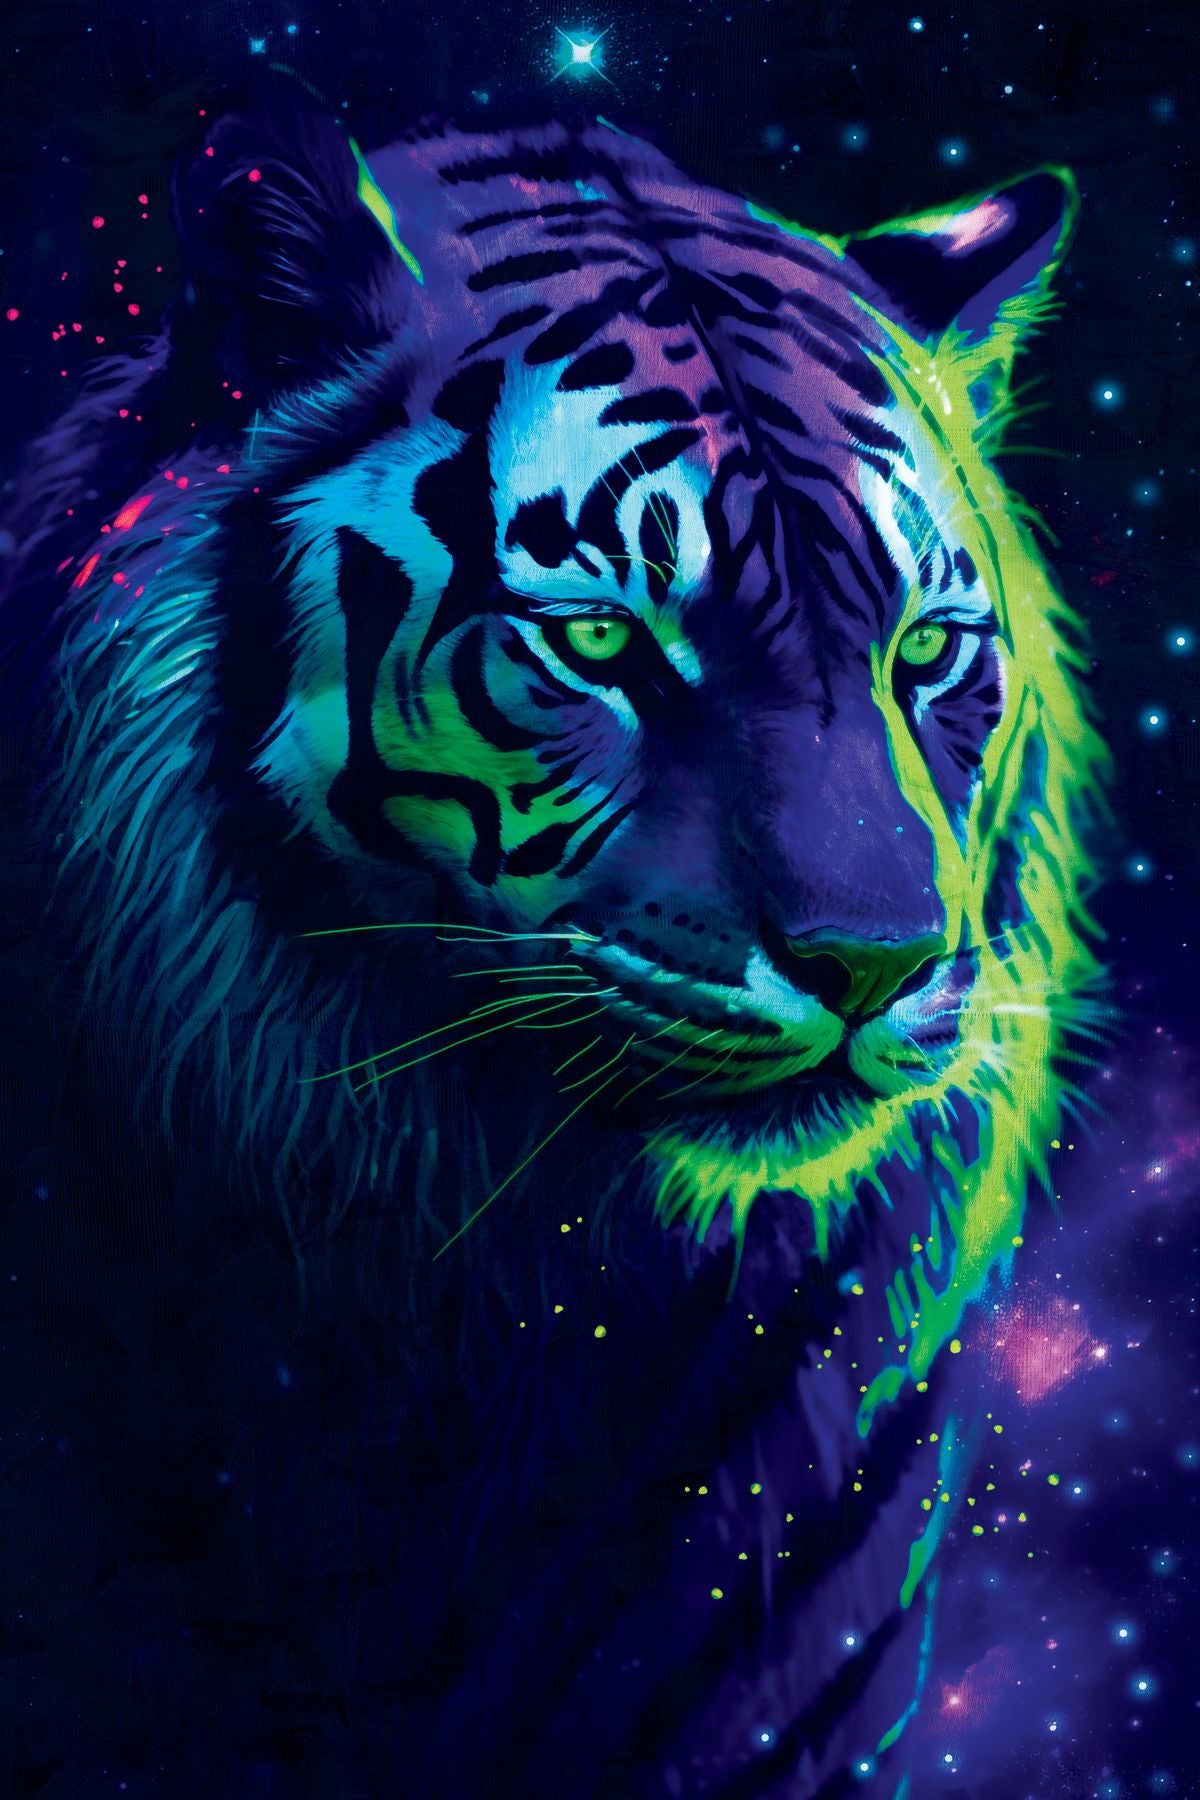 Cosmic Tiger III